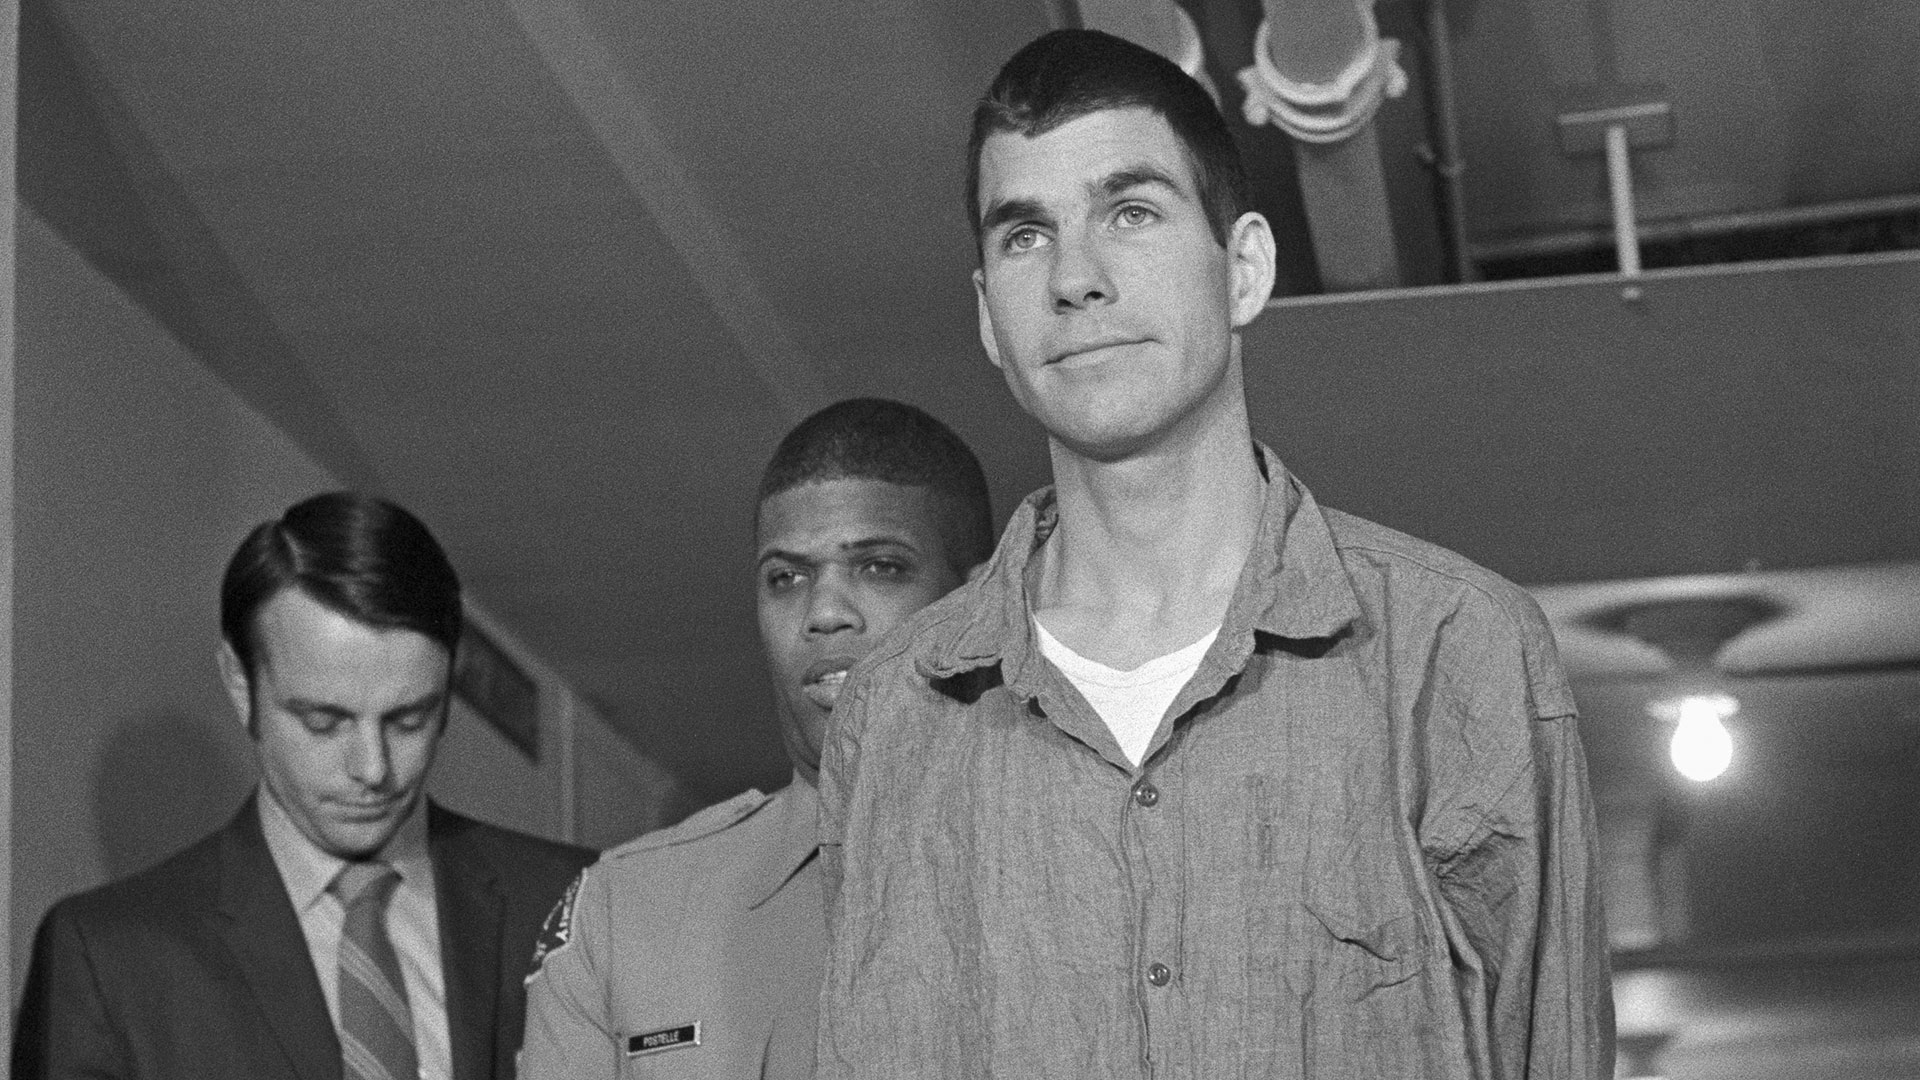 Charles "Tex" Watson llega para la lectura de cargos por cargos de conspiración y asesinato en los crímenes de Tate-LaBianca. Fue declarado culpable el 25 de enero de 1971 (Bettmann Archive)
